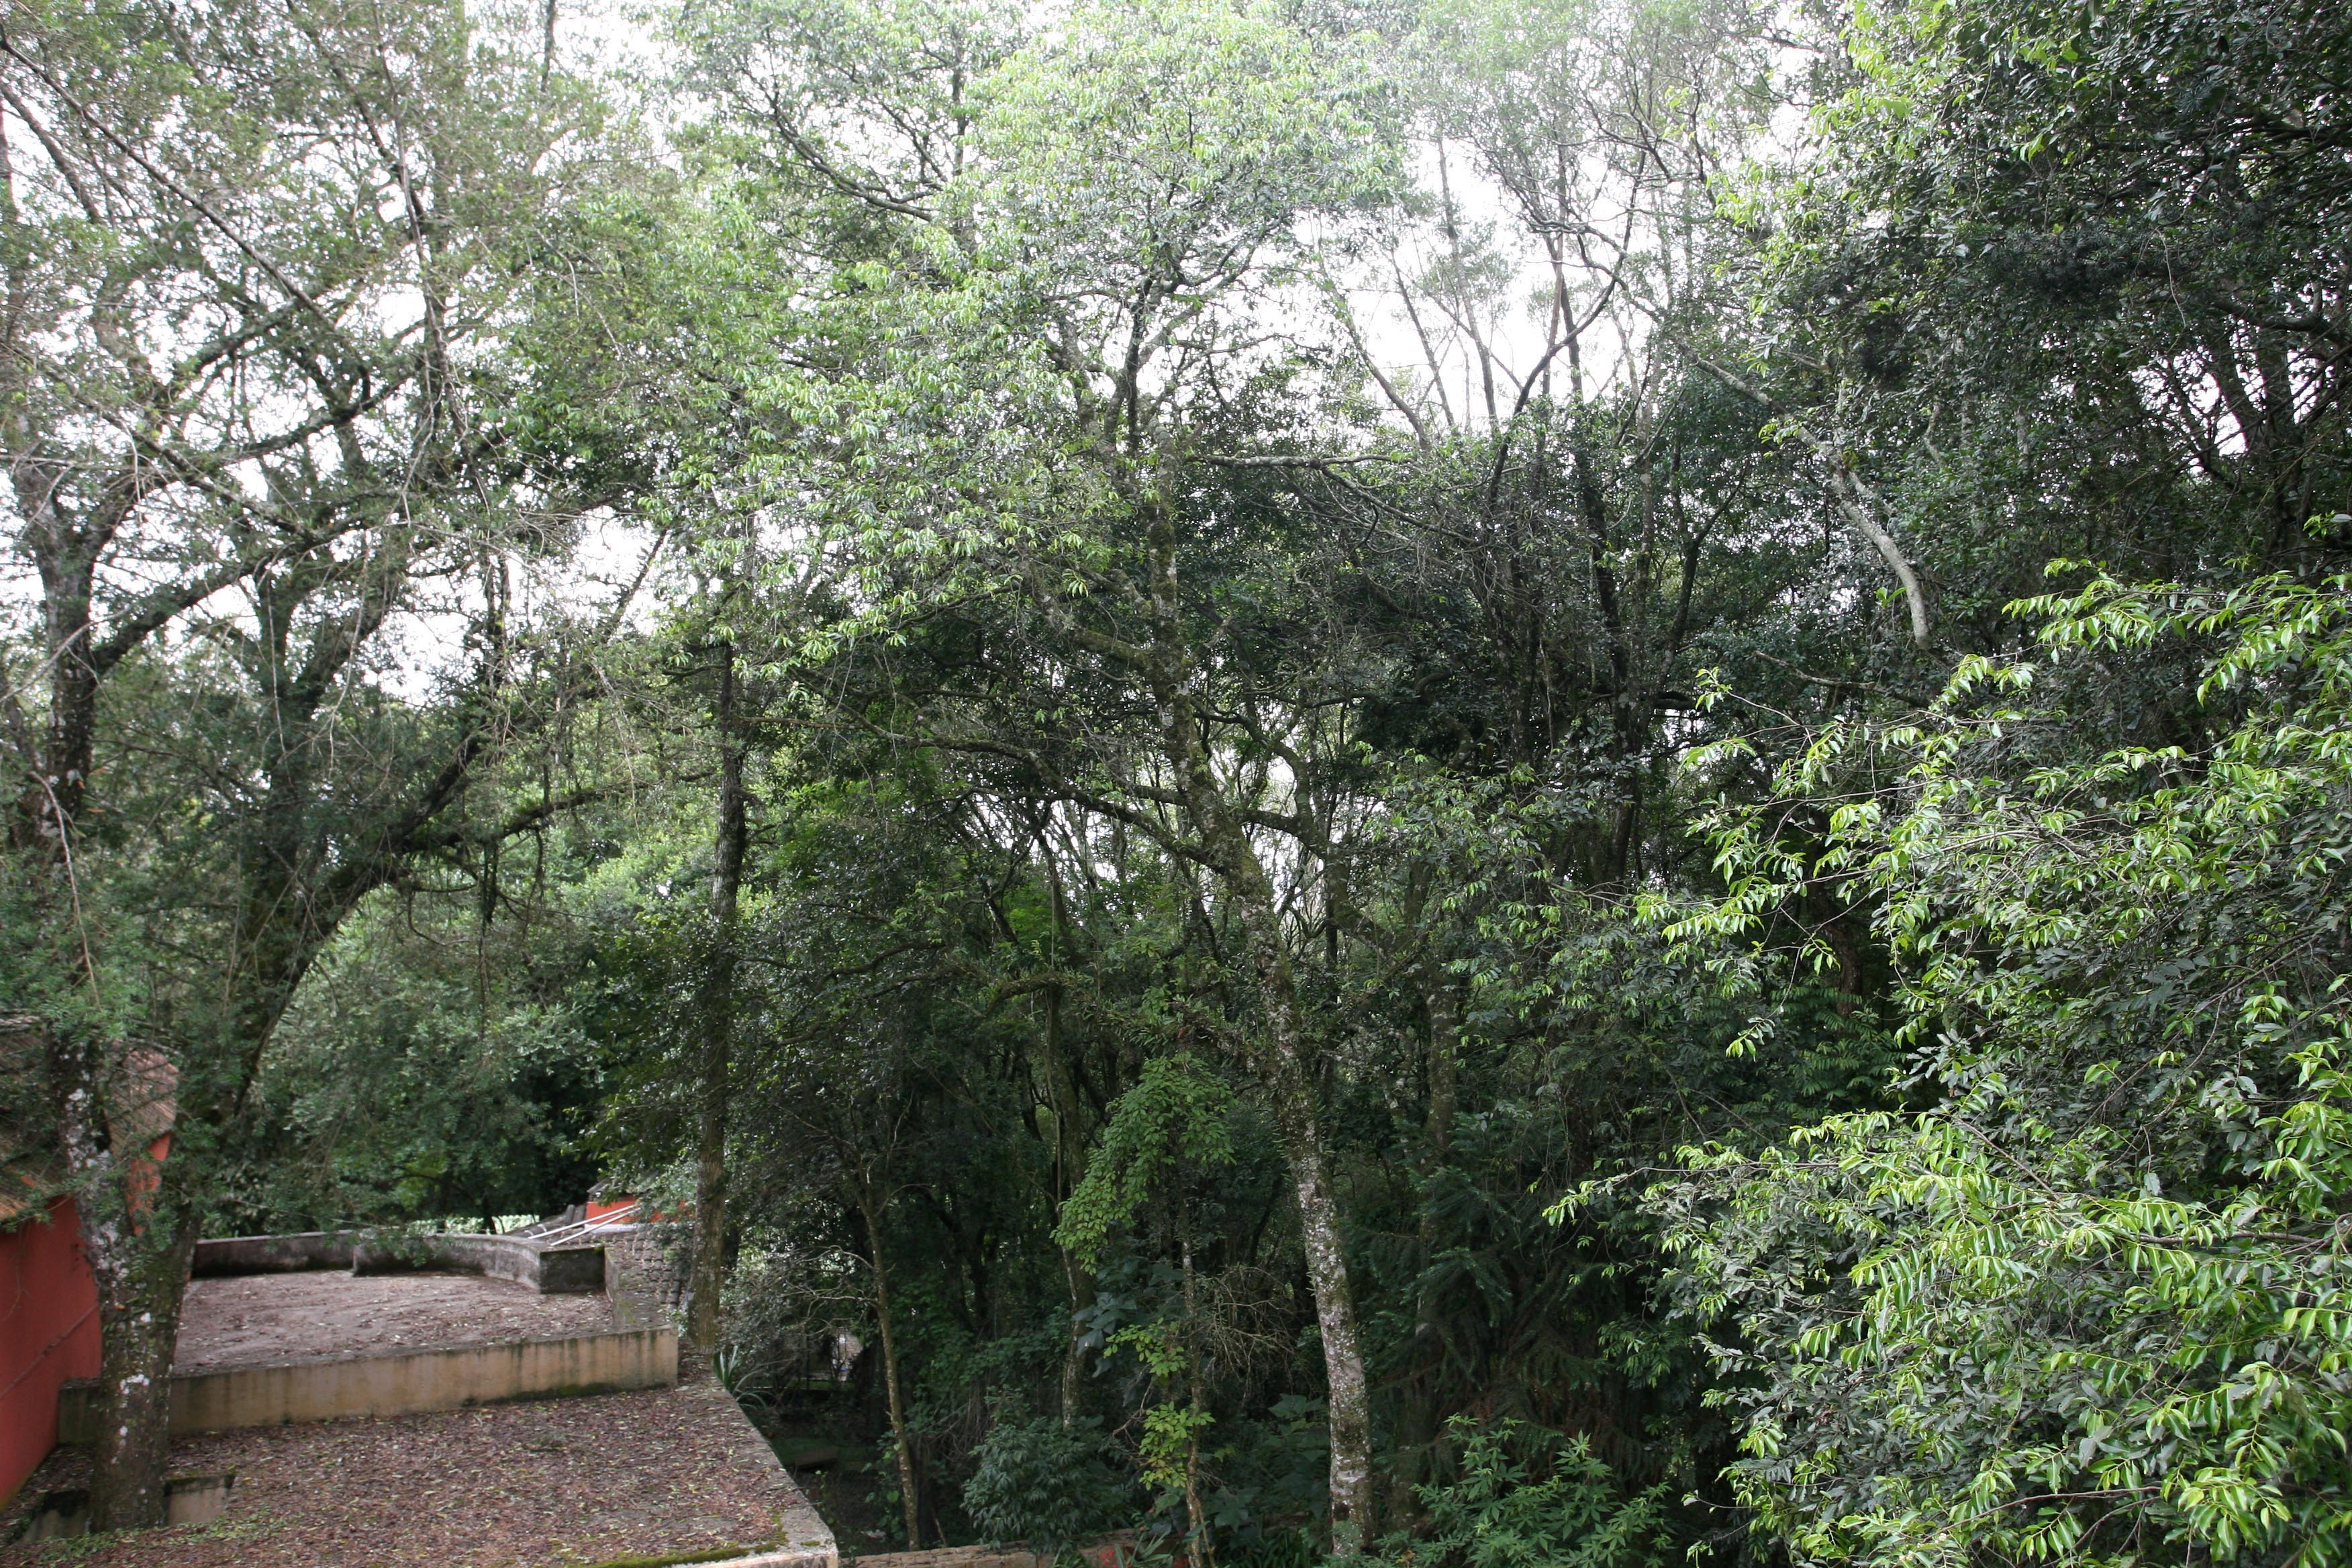  Reservas do patrimônio natural são criadas em Curitiba